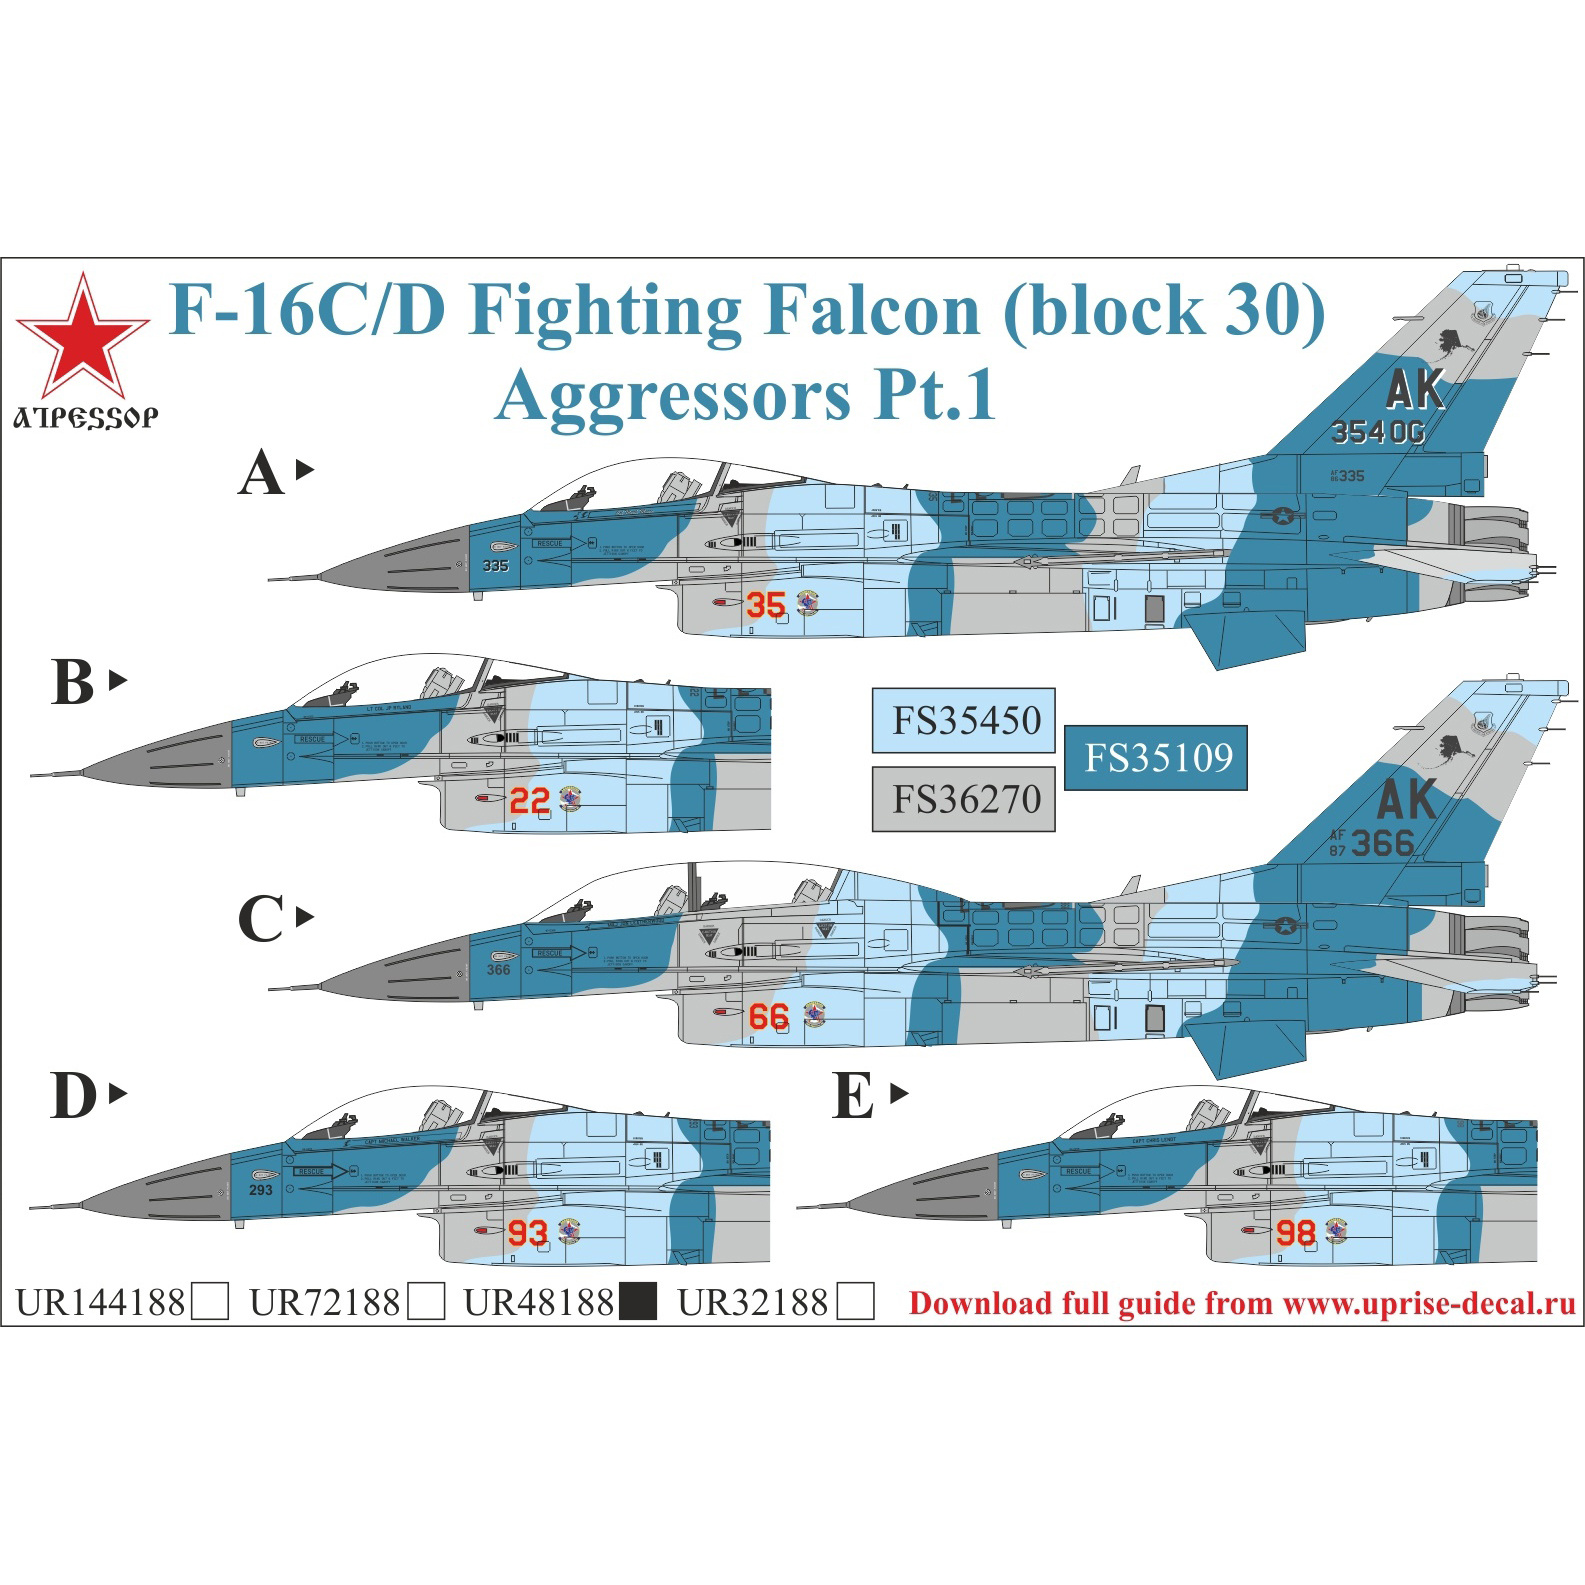 UR48188 UpRise 1/48 Декали для F-16C/D Fighting Falcon Aggressor Pt.1, с тех. надписями, FFA (удаляемая лаковая подложка)